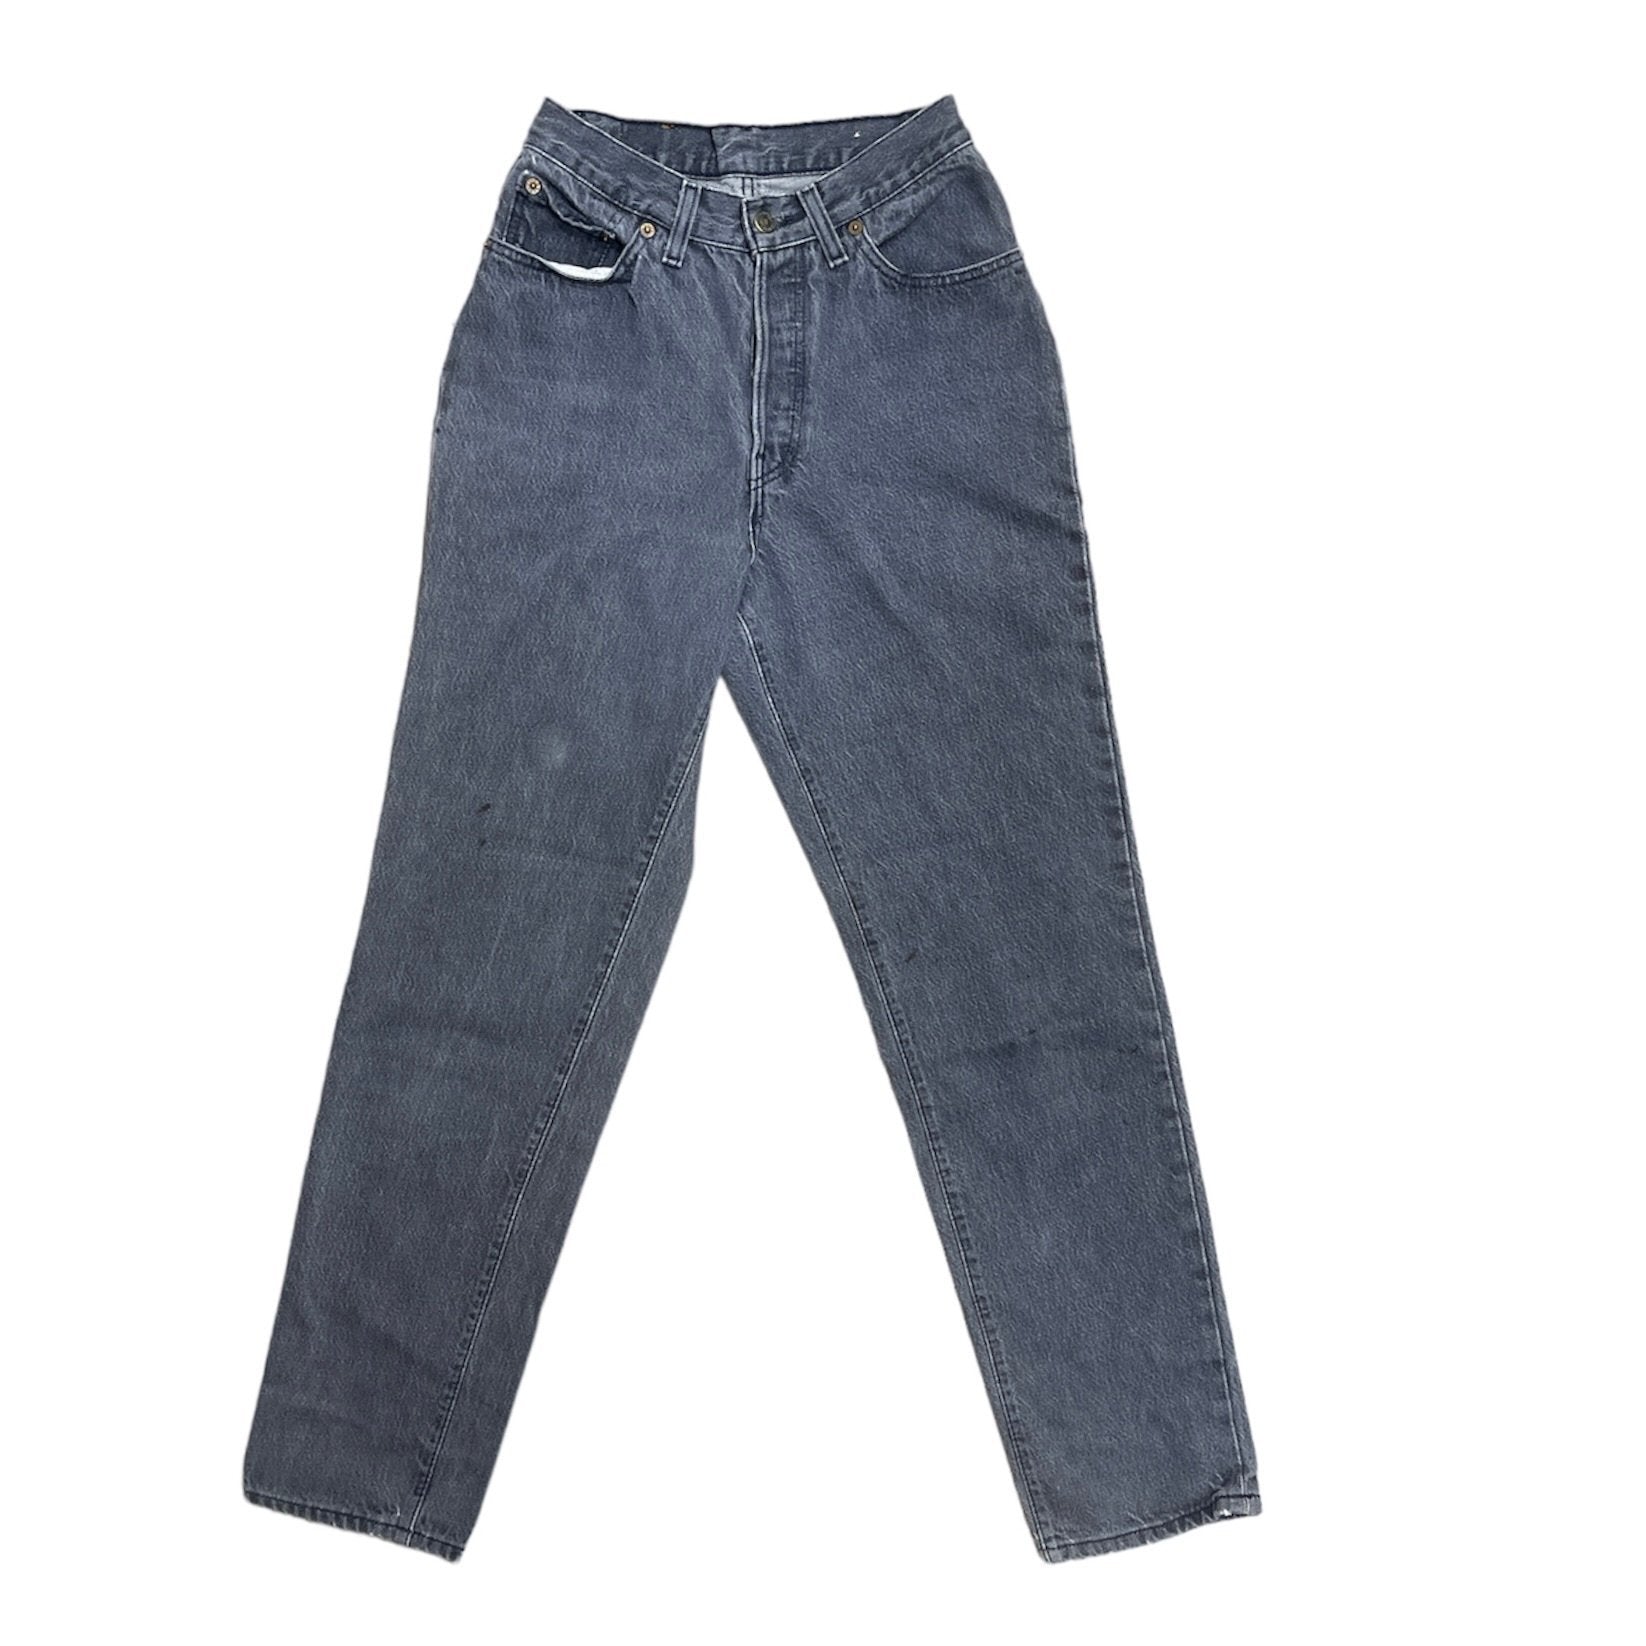 Vintage Levis Black/Grey Jeans (W26/L30)